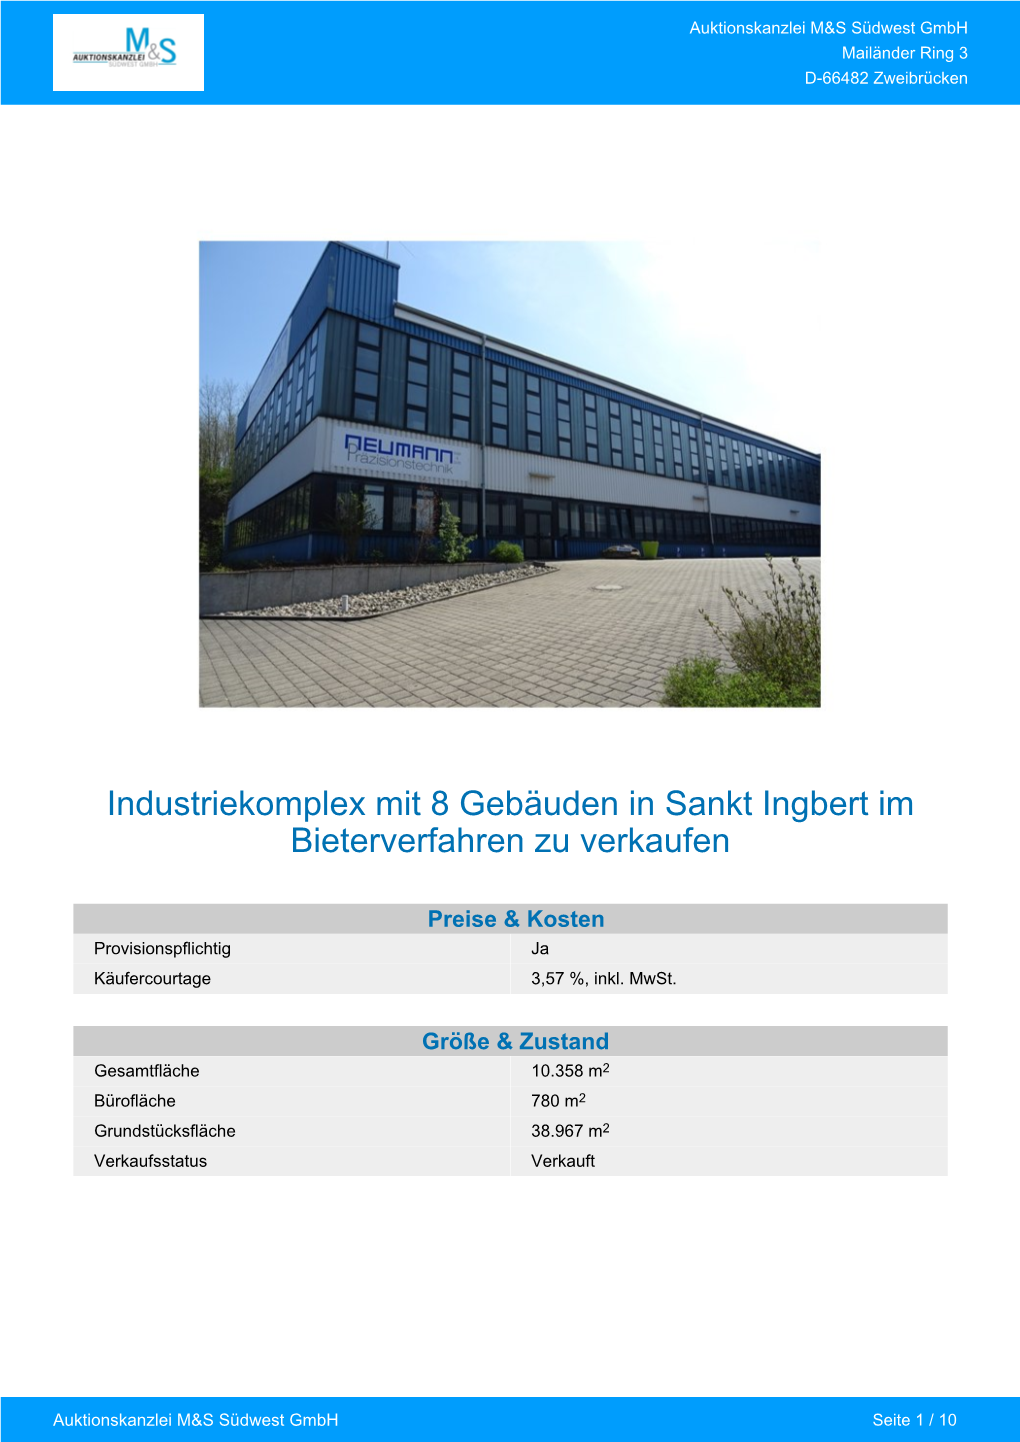 Industriekomplex Mit 8 Gebäuden in Sankt Ingbert Im Bieterverfahren Zu Verkaufen